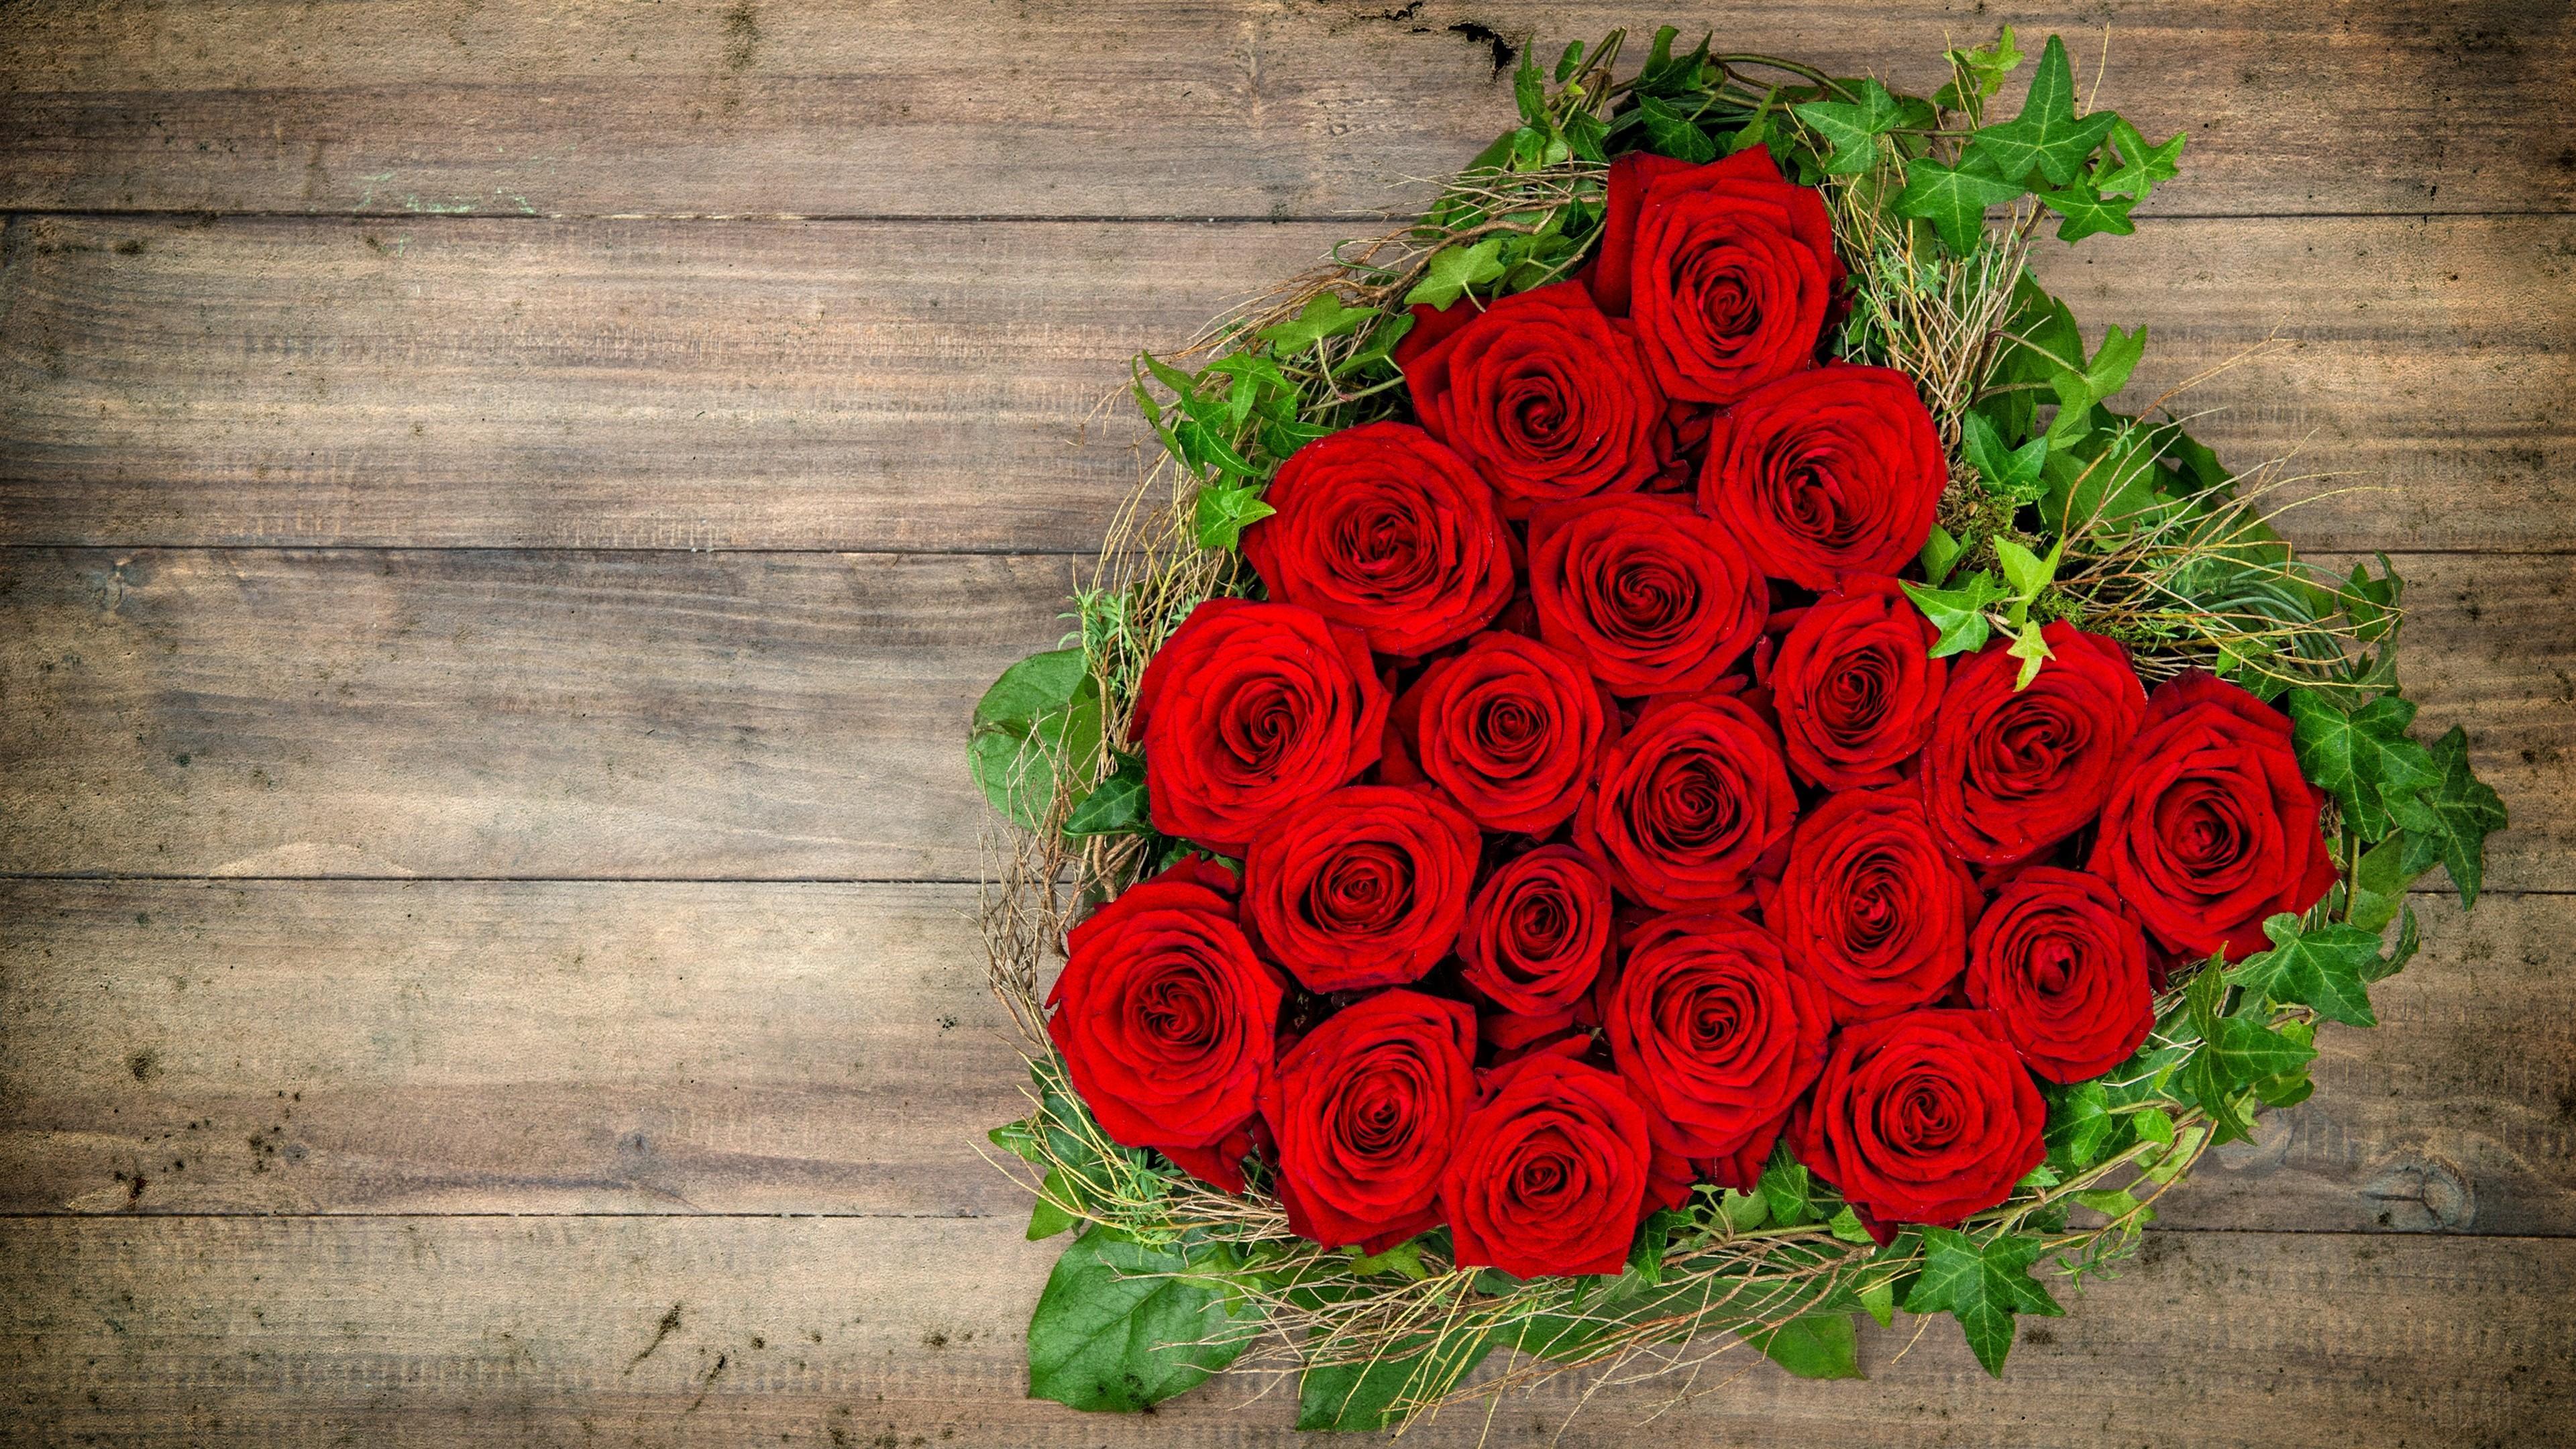 HD wallpaper, Heart, Rose 4K, Red Flower, Romantic, Red Rose, Love